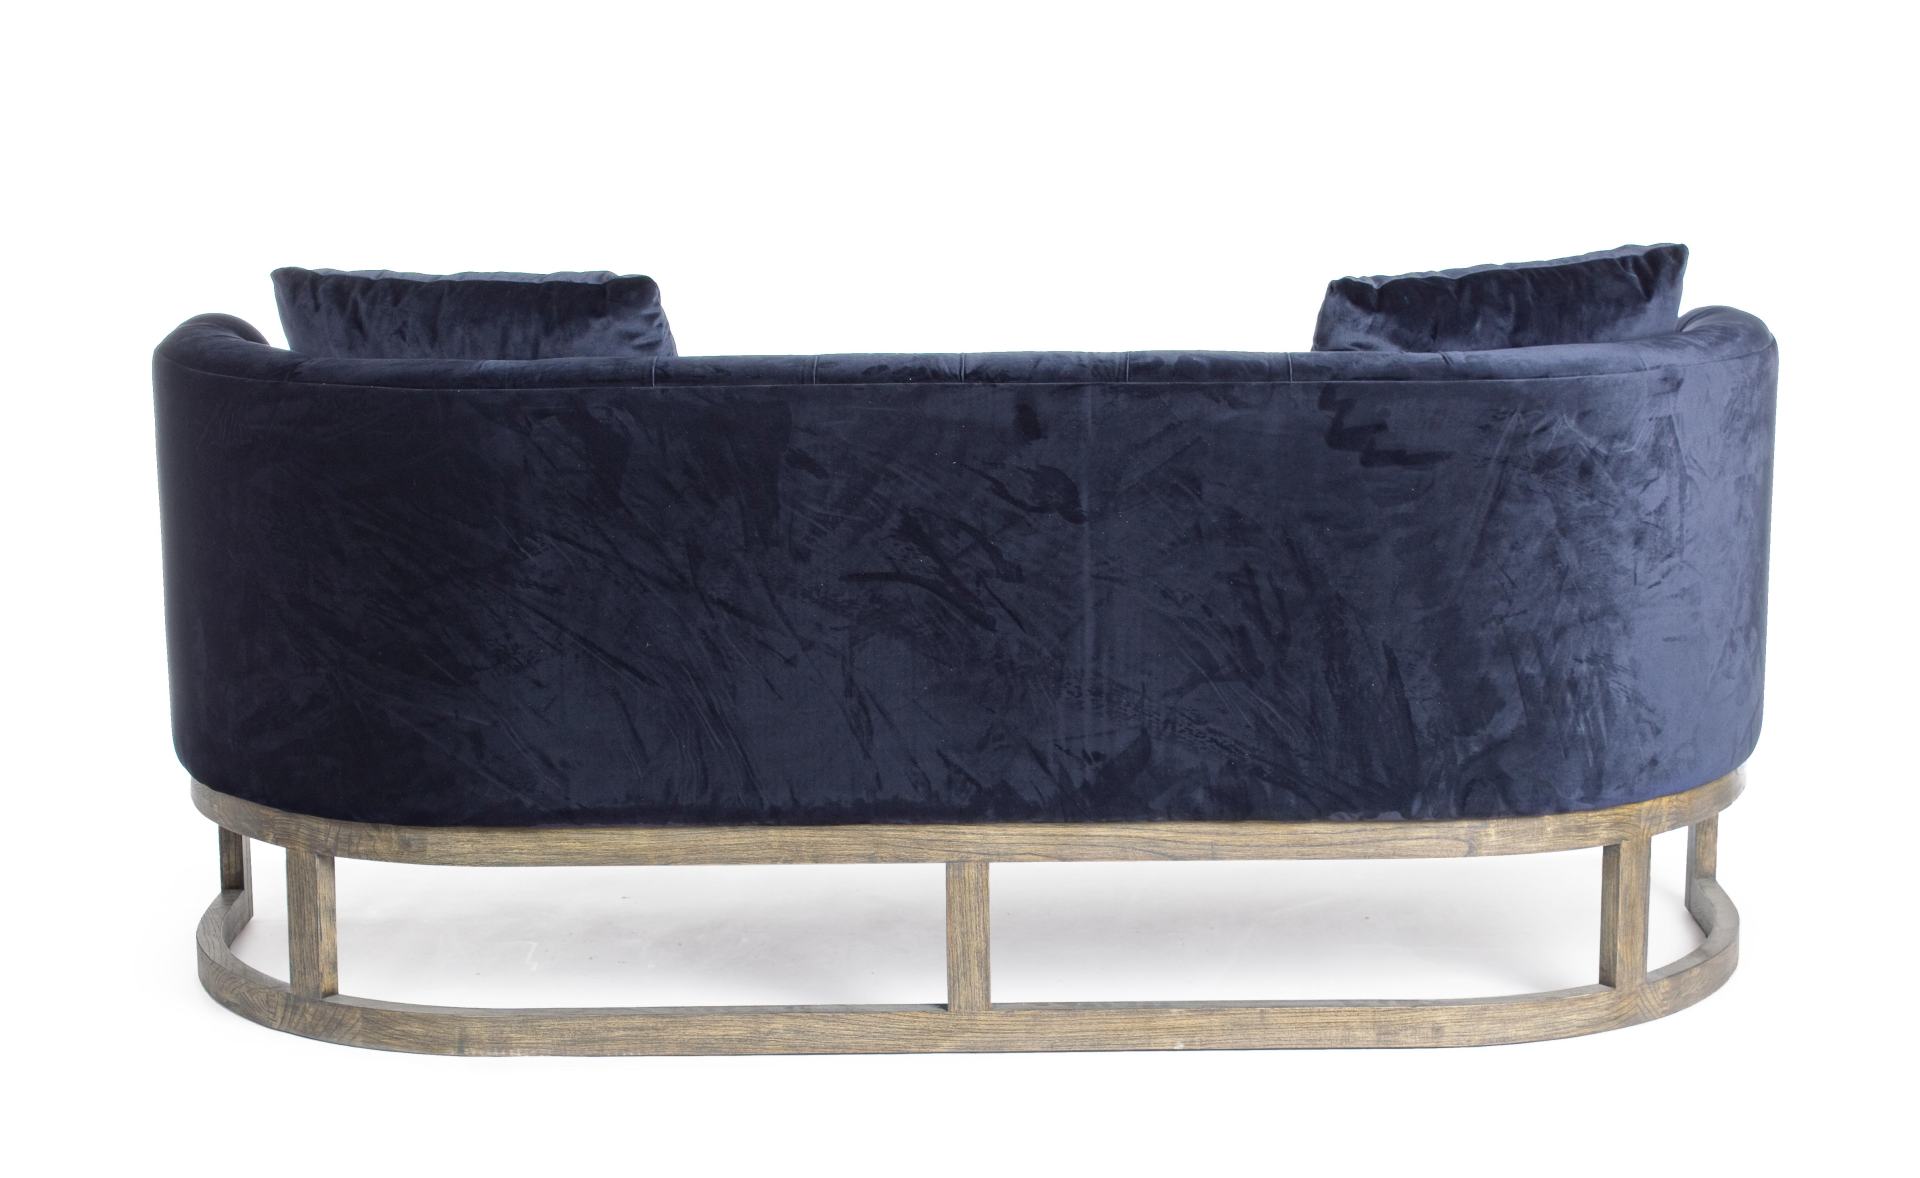 Das Sofa Midway überzeugt mit seinem klassischen Design. Gefertigt wurde es aus Samt, welches einen blauen Farbton besitzt. Das Gestell ist aus Eichenholz und hat eine natürliche Farbe. Das Sofa ist in der Ausführung als 3-Sitzer. Die Breite beträgt 180 c